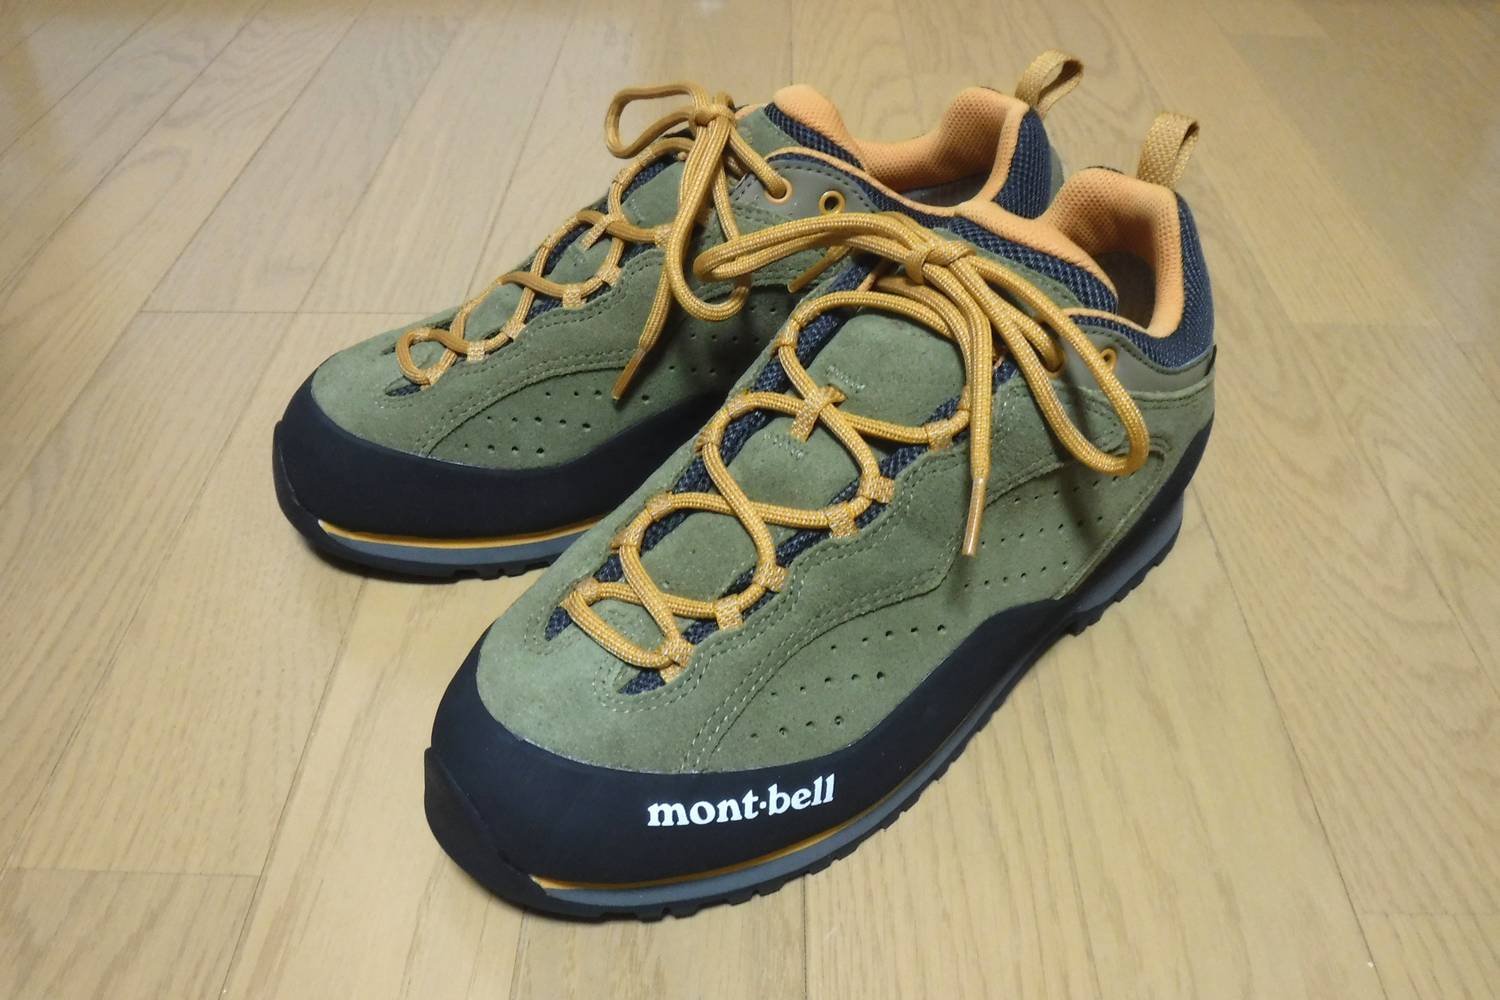 セール mont-bell 軽登山靴 クラッグステッパー alamocirugiaplastica.com